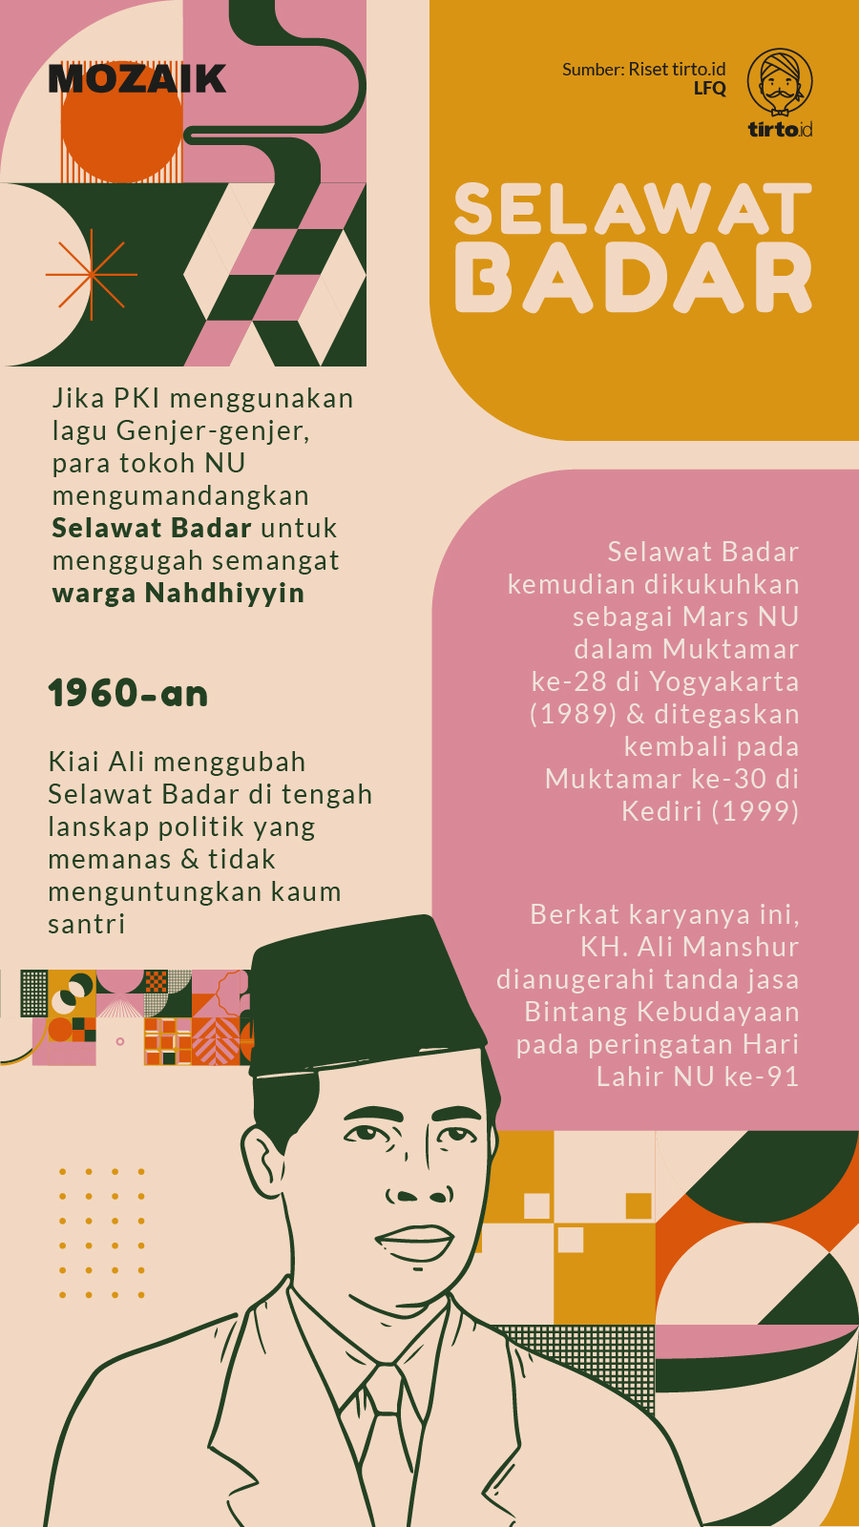 Infografik Mozaik Selawat Badar